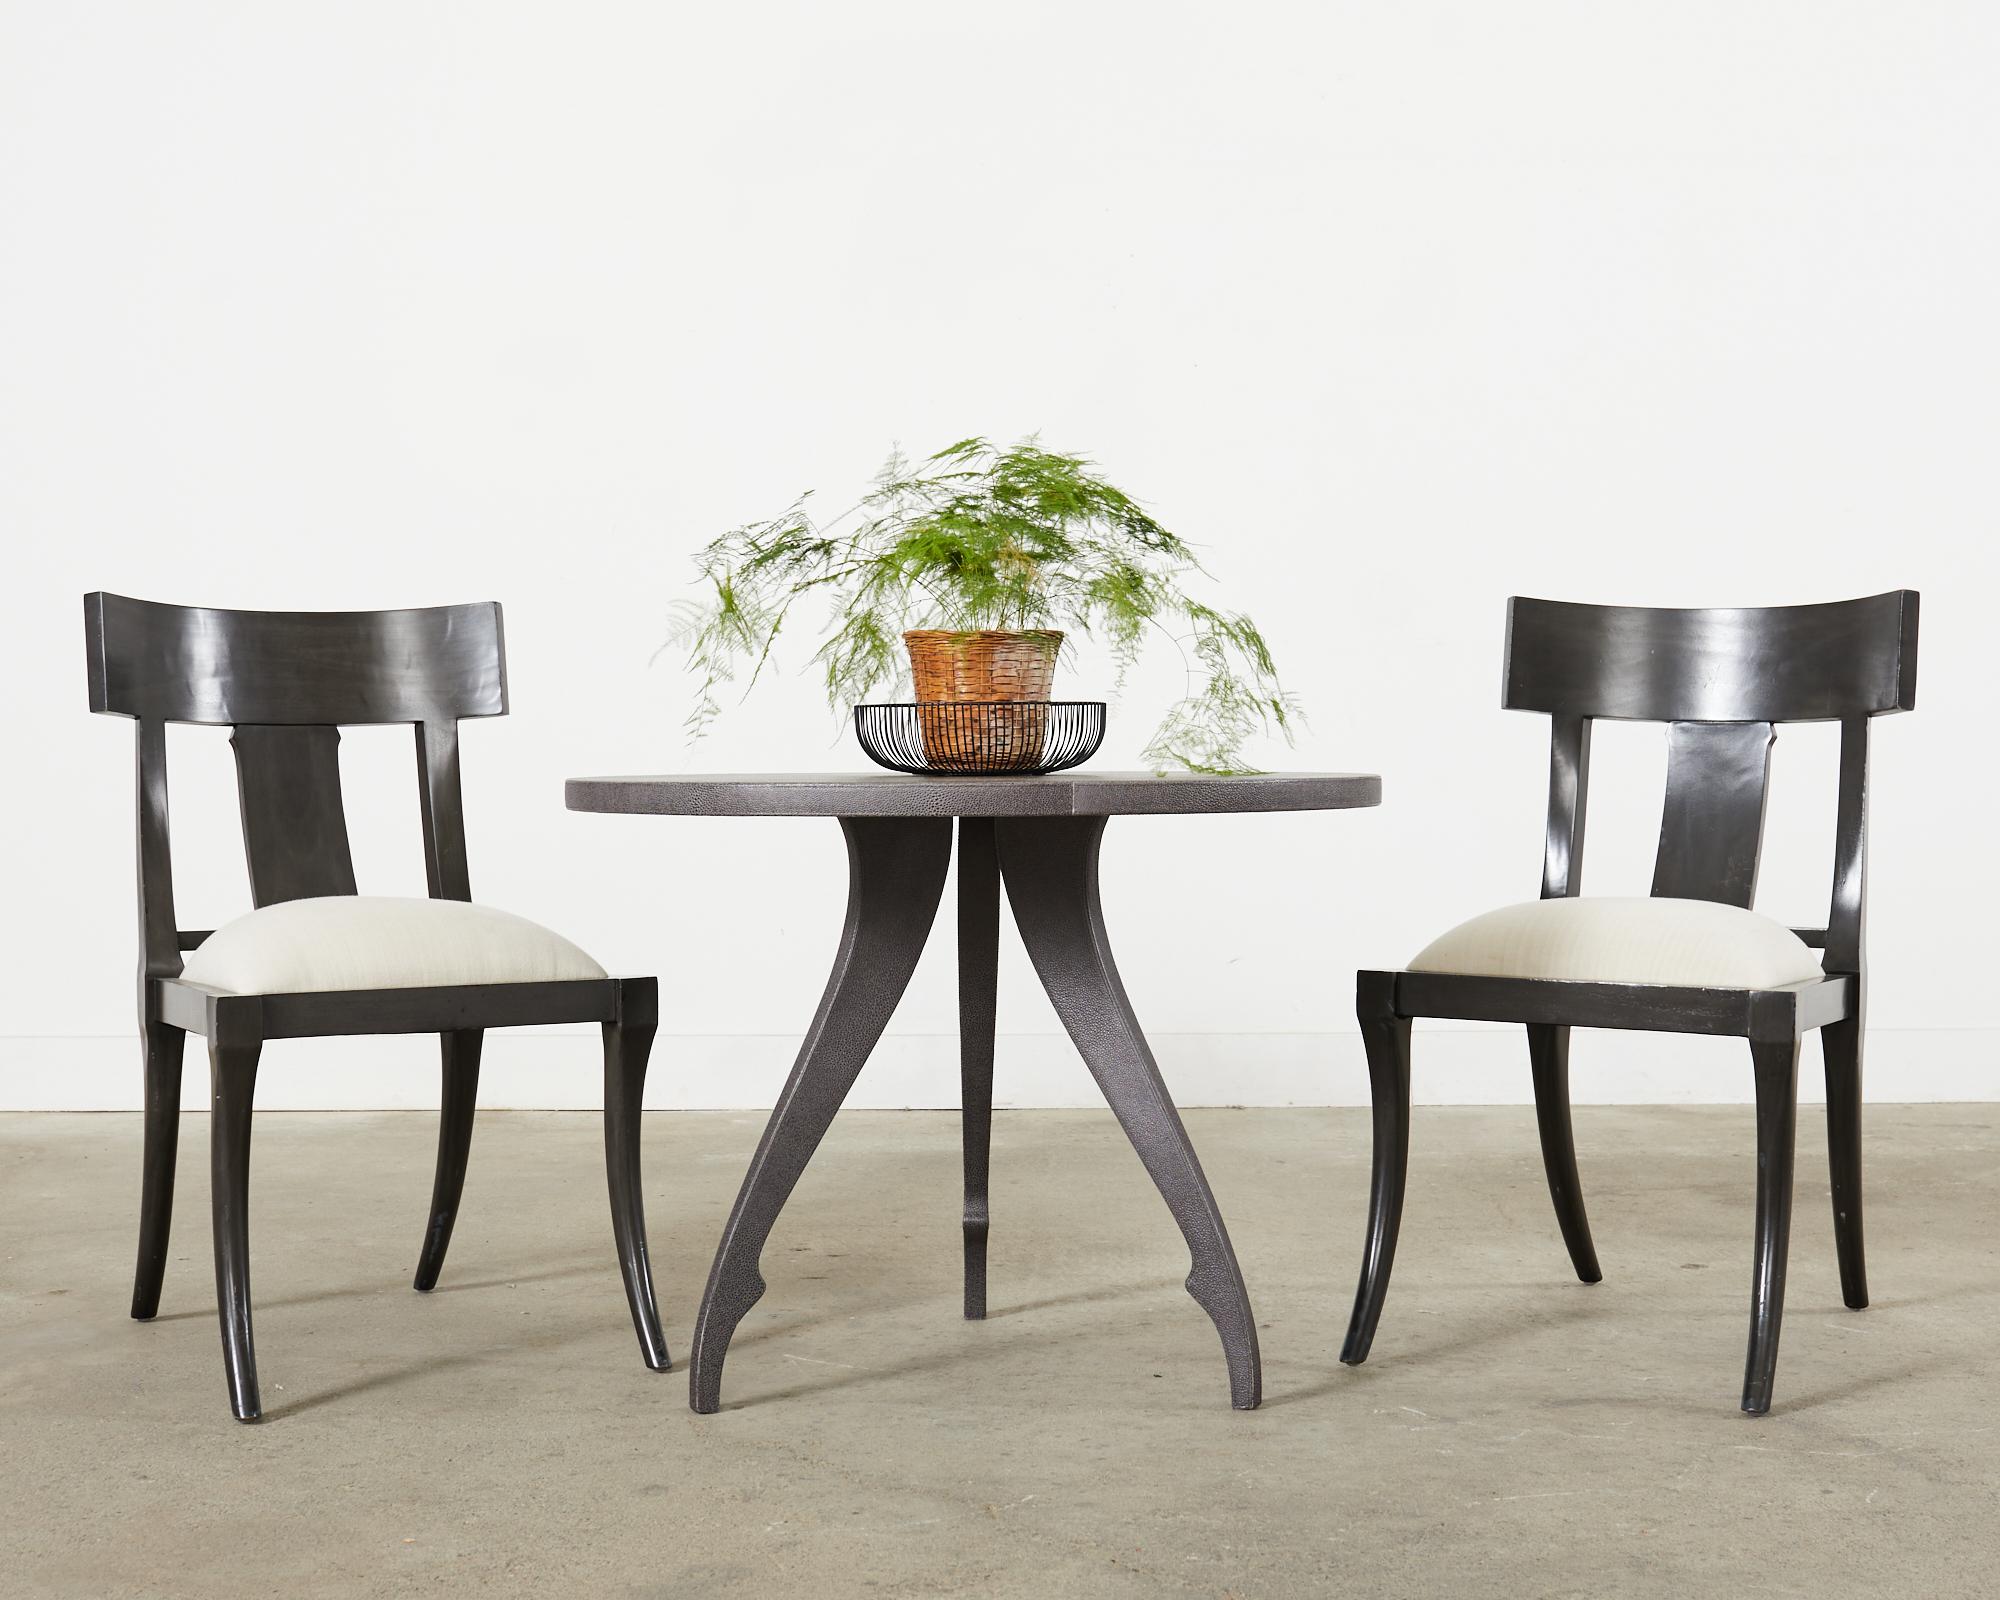 Skurriler und seltener runder Mitteltisch, entworfen von Fendi Casa. Der Tisch hat eine runde Platte, die von einem Dreibeinfuß mit Ballettbeinen und Füßen getragen wird. Der Schwanentisch ist vollständig mit handgenähtem, dunkelgrauem Lederimitat